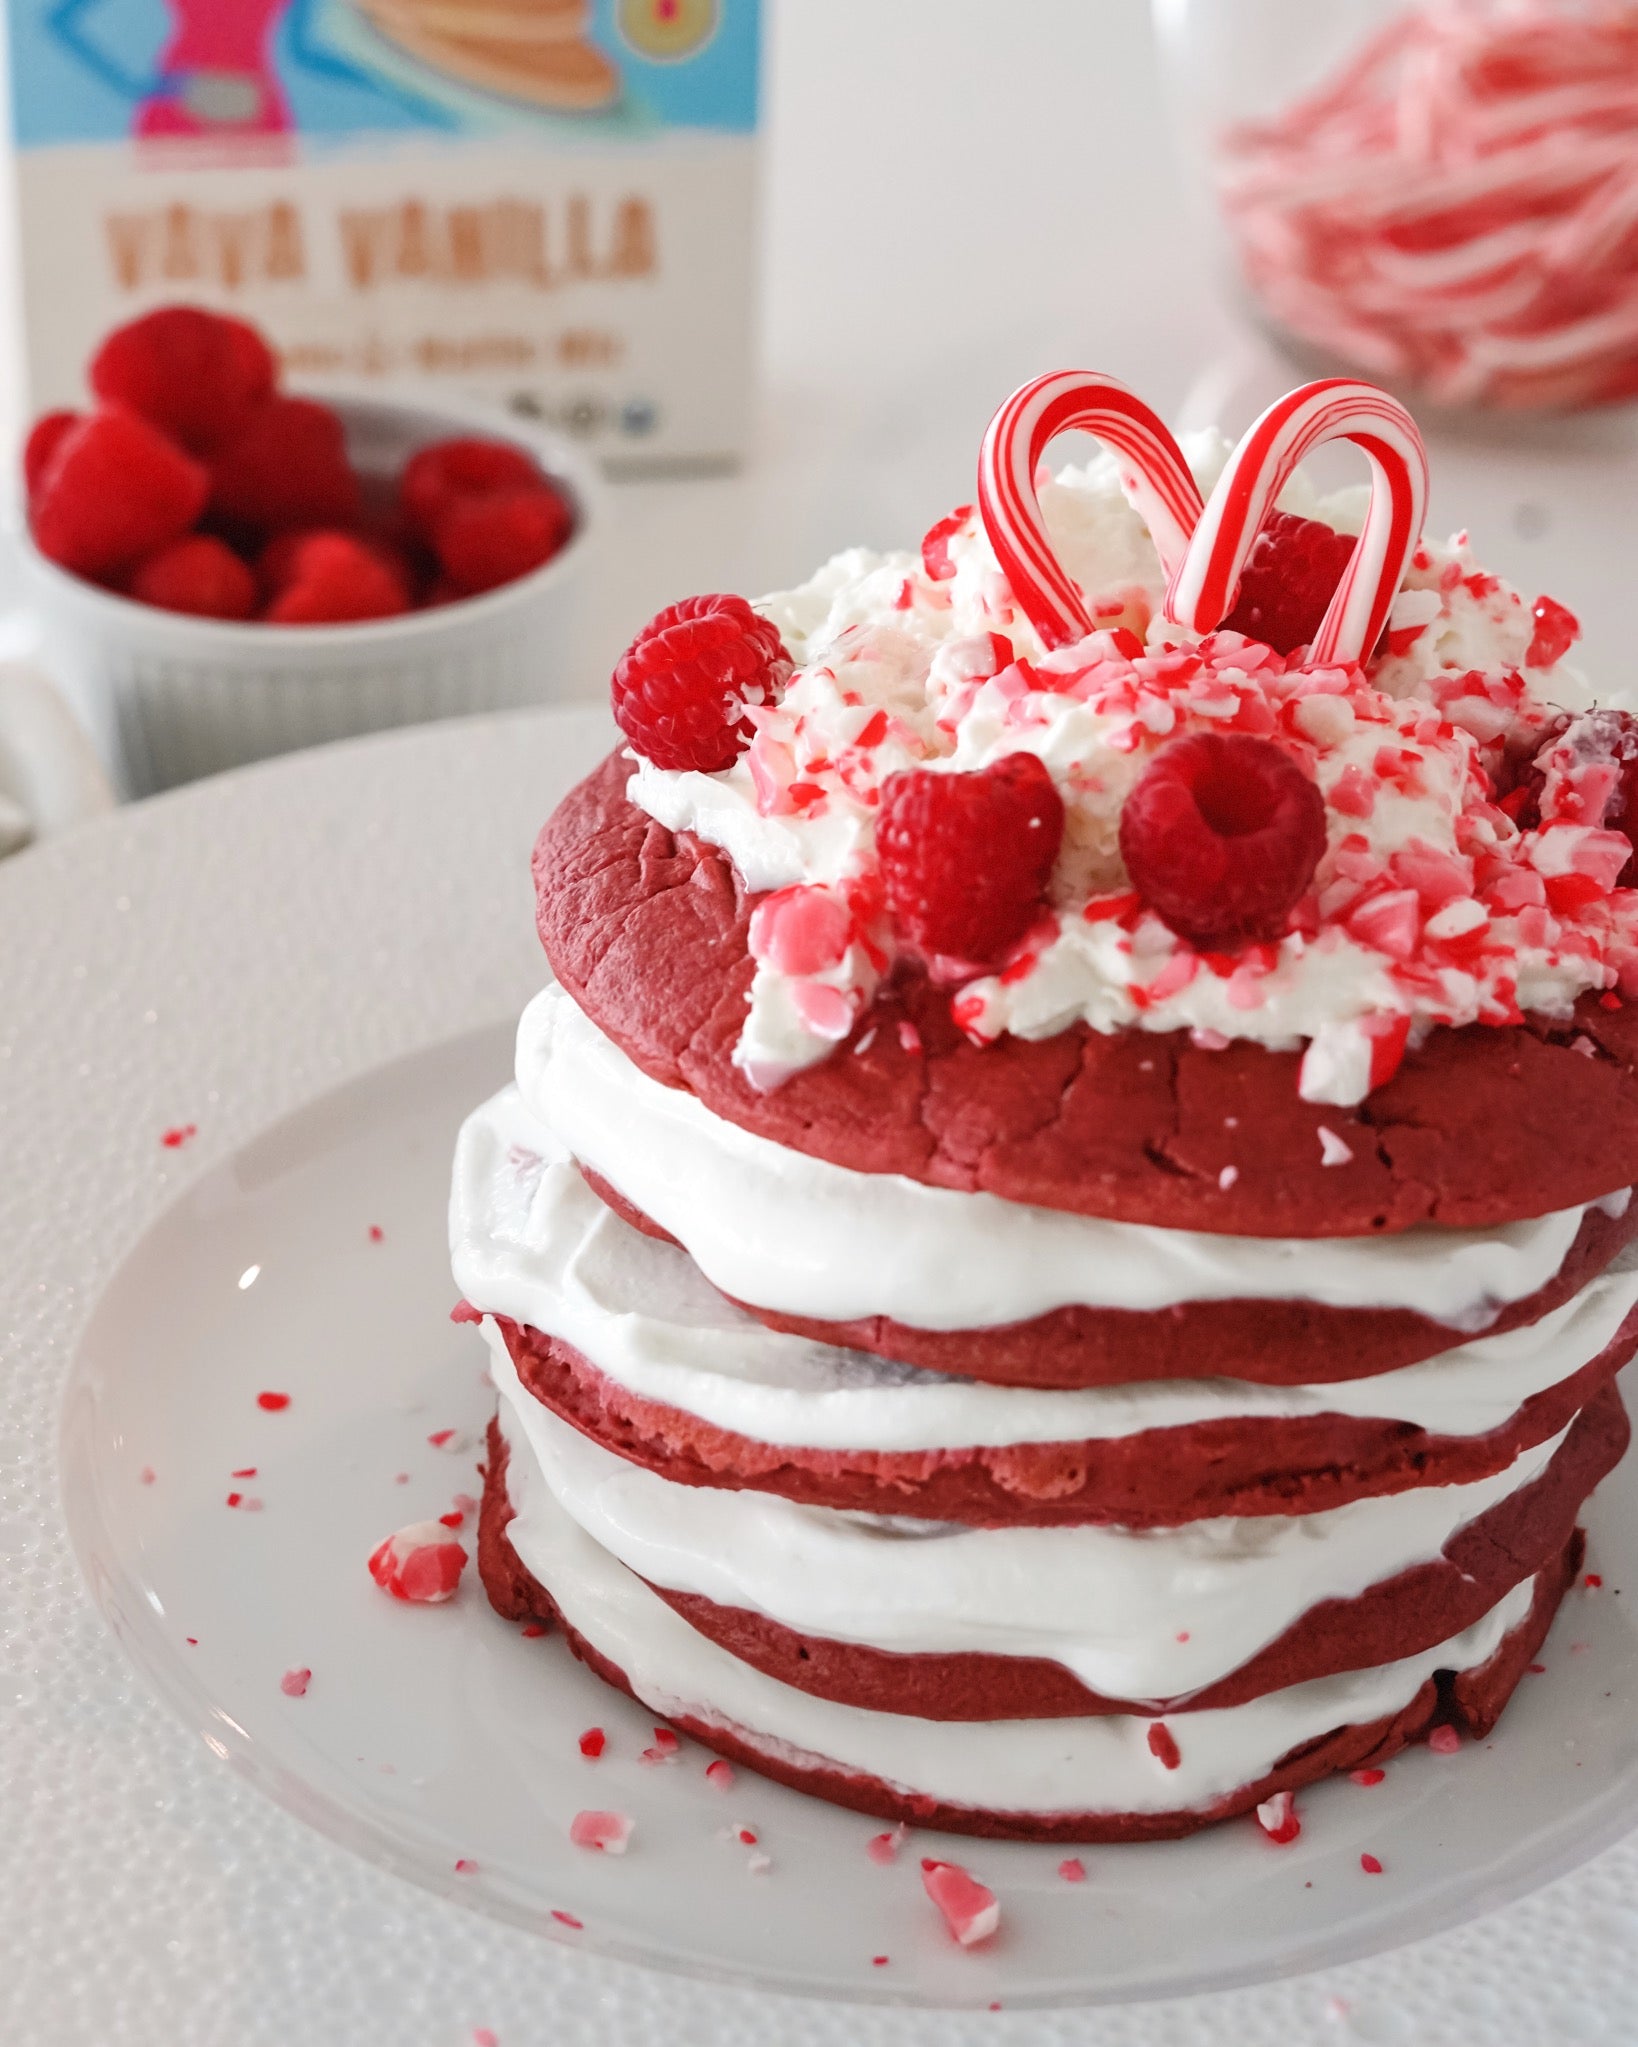 Minty Red Velvet Cakes